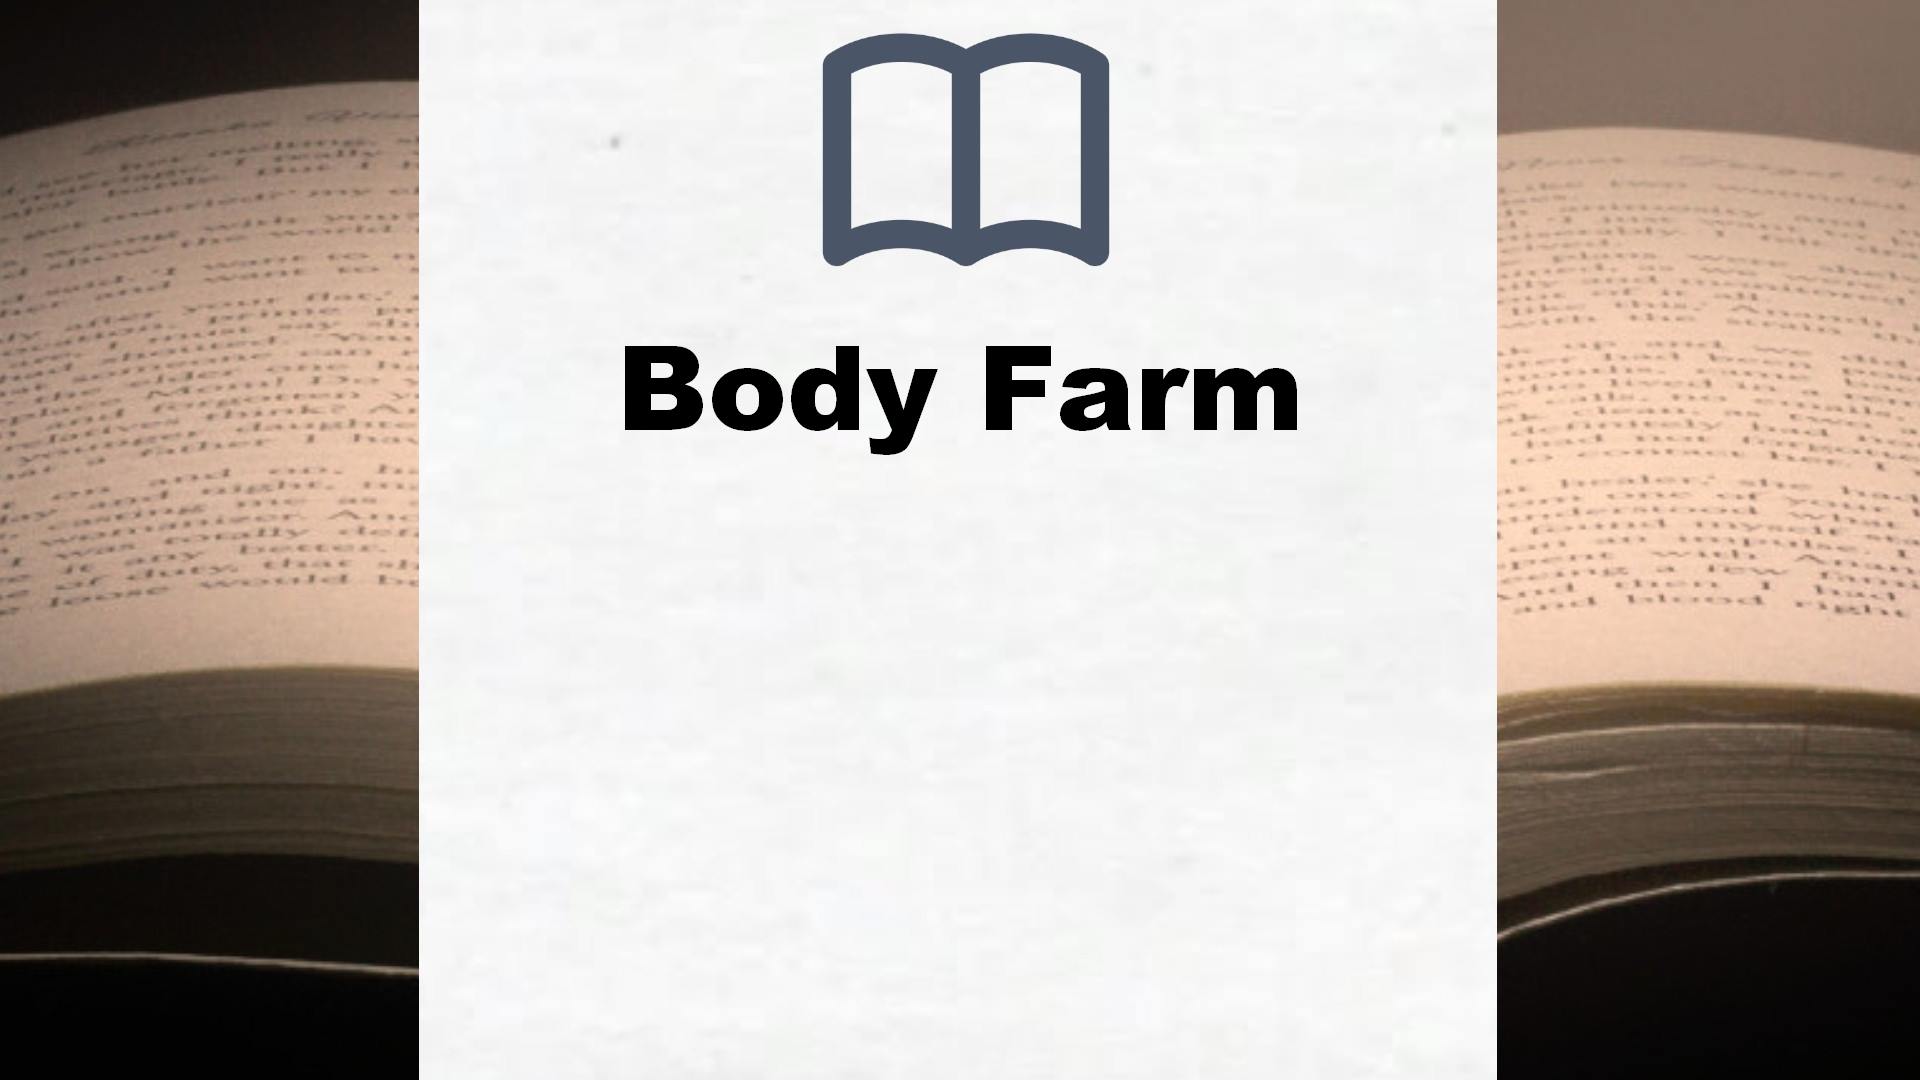 Bücher über Body Farm